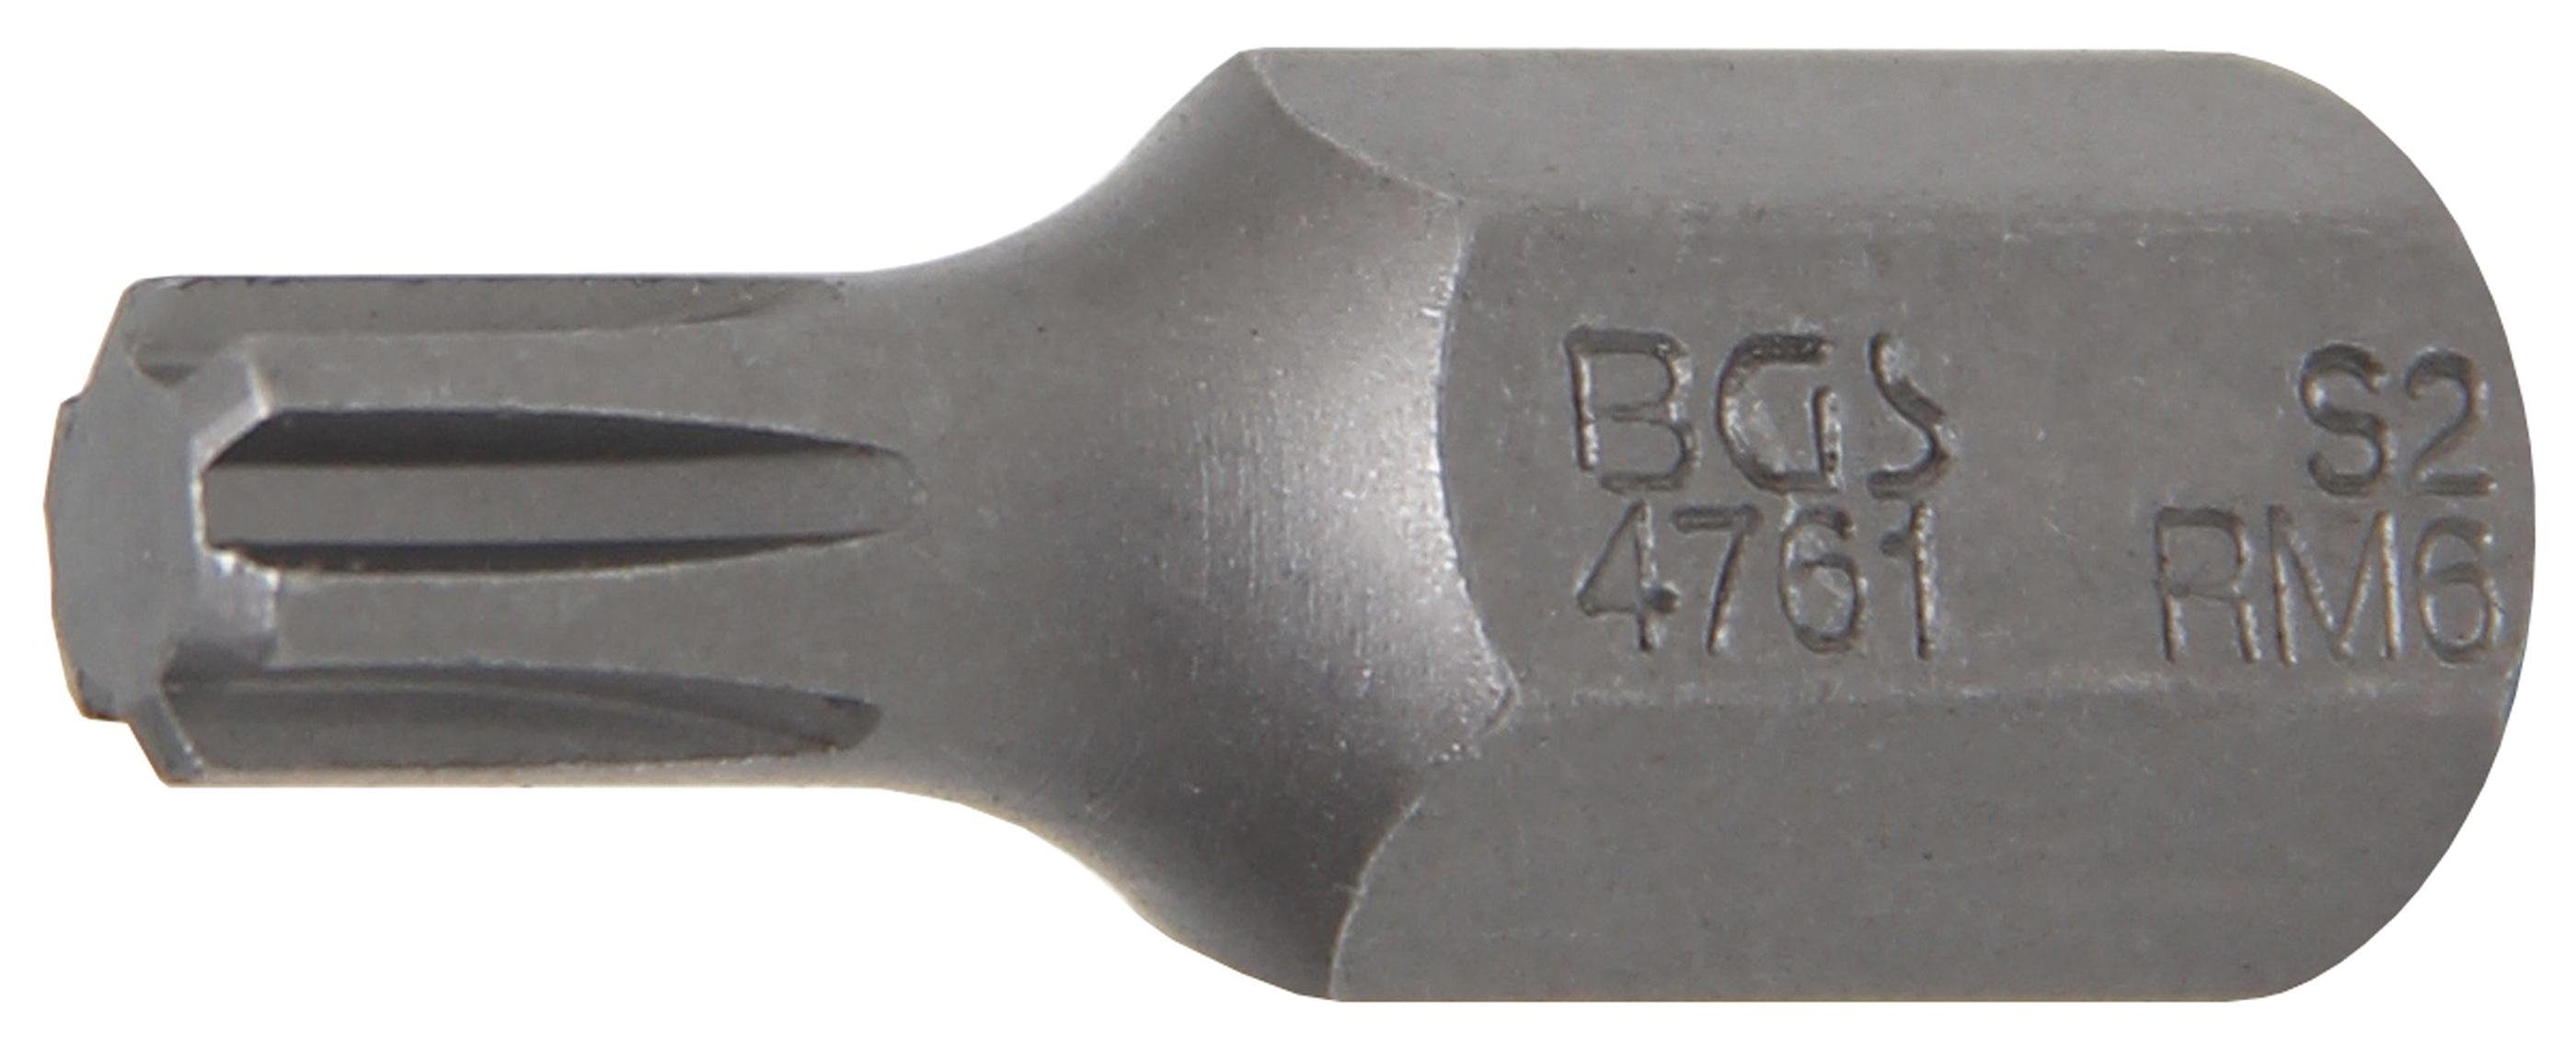 BGS technic Bit-Schraubendreher Bit, Antrieb Außensechskant 10 mm (3/8), Keil-Profil (für RIBE) M6